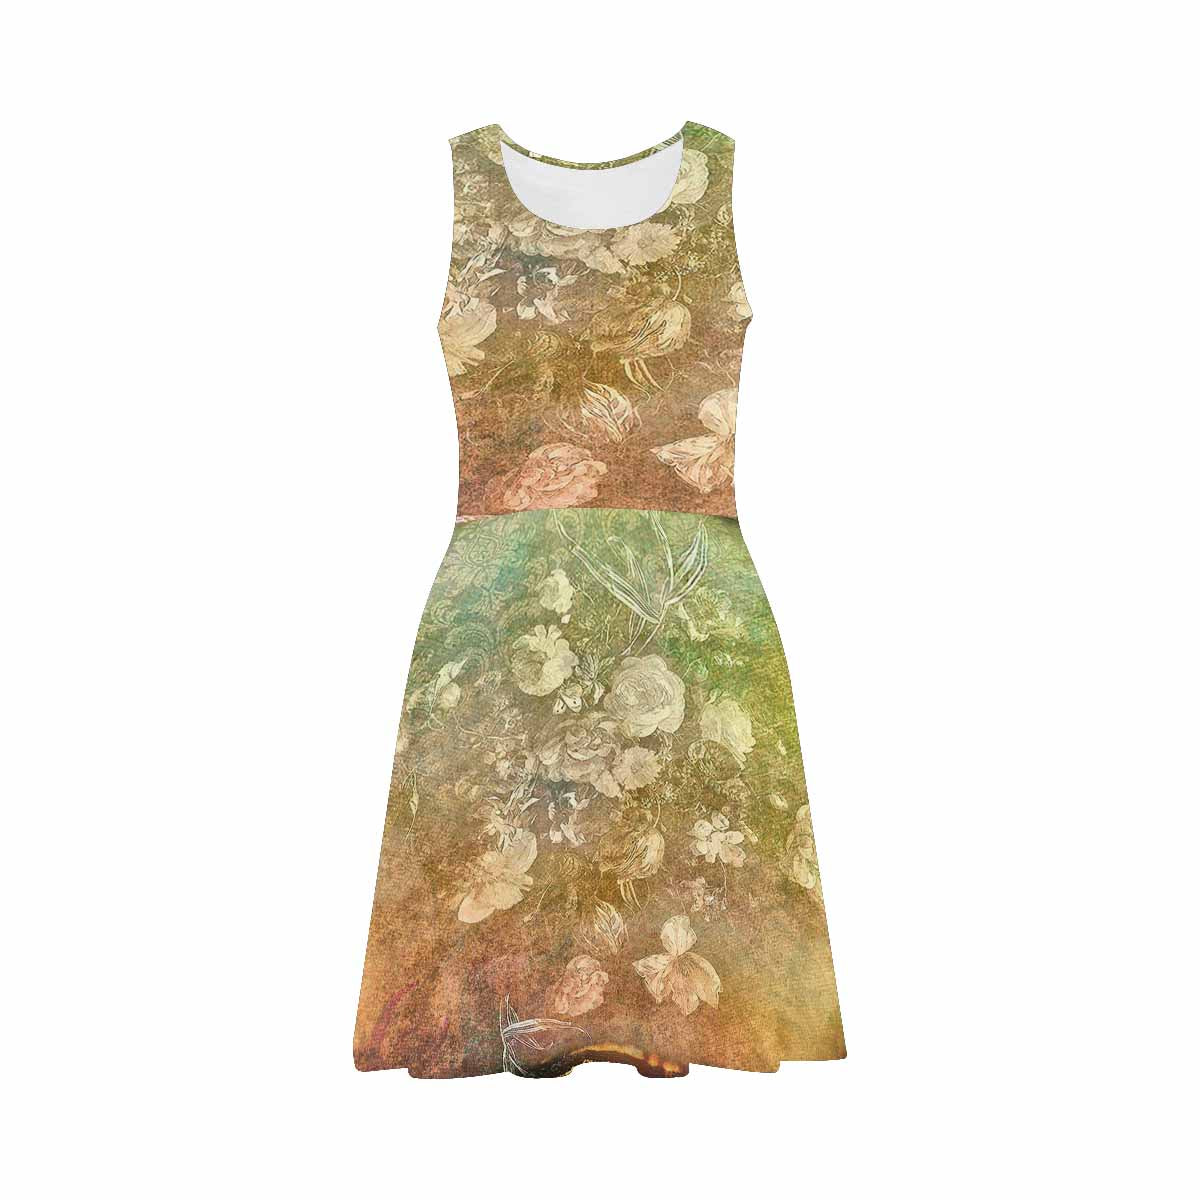 Antique General summer dress, MODEL 09534, design 09